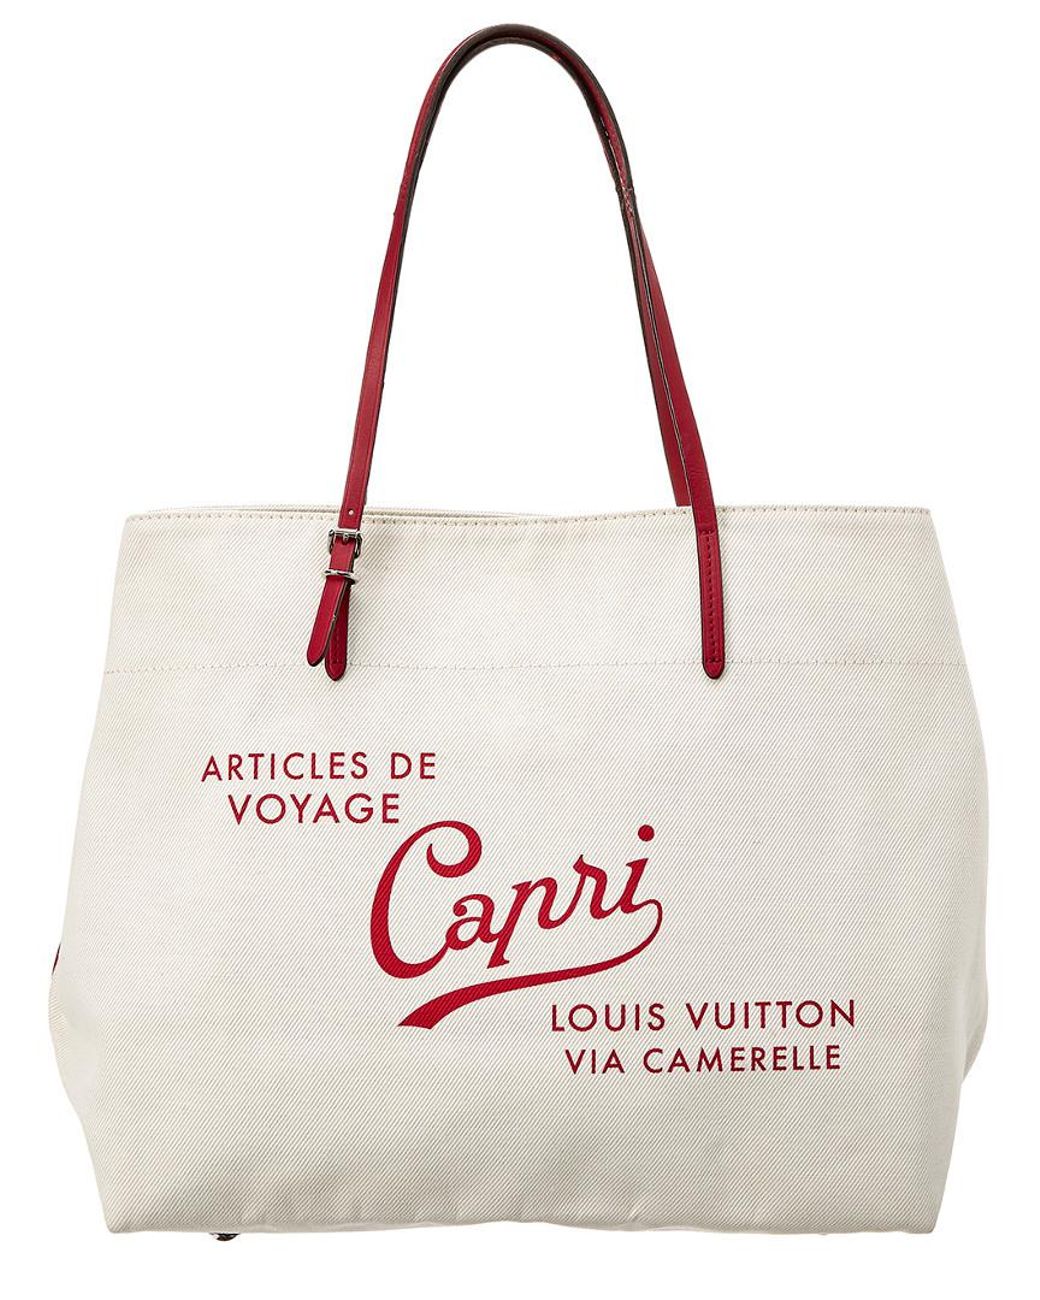 Louis Vuitton Limited Edition White Canvas Capri Articles De Voyage Cabas Gm